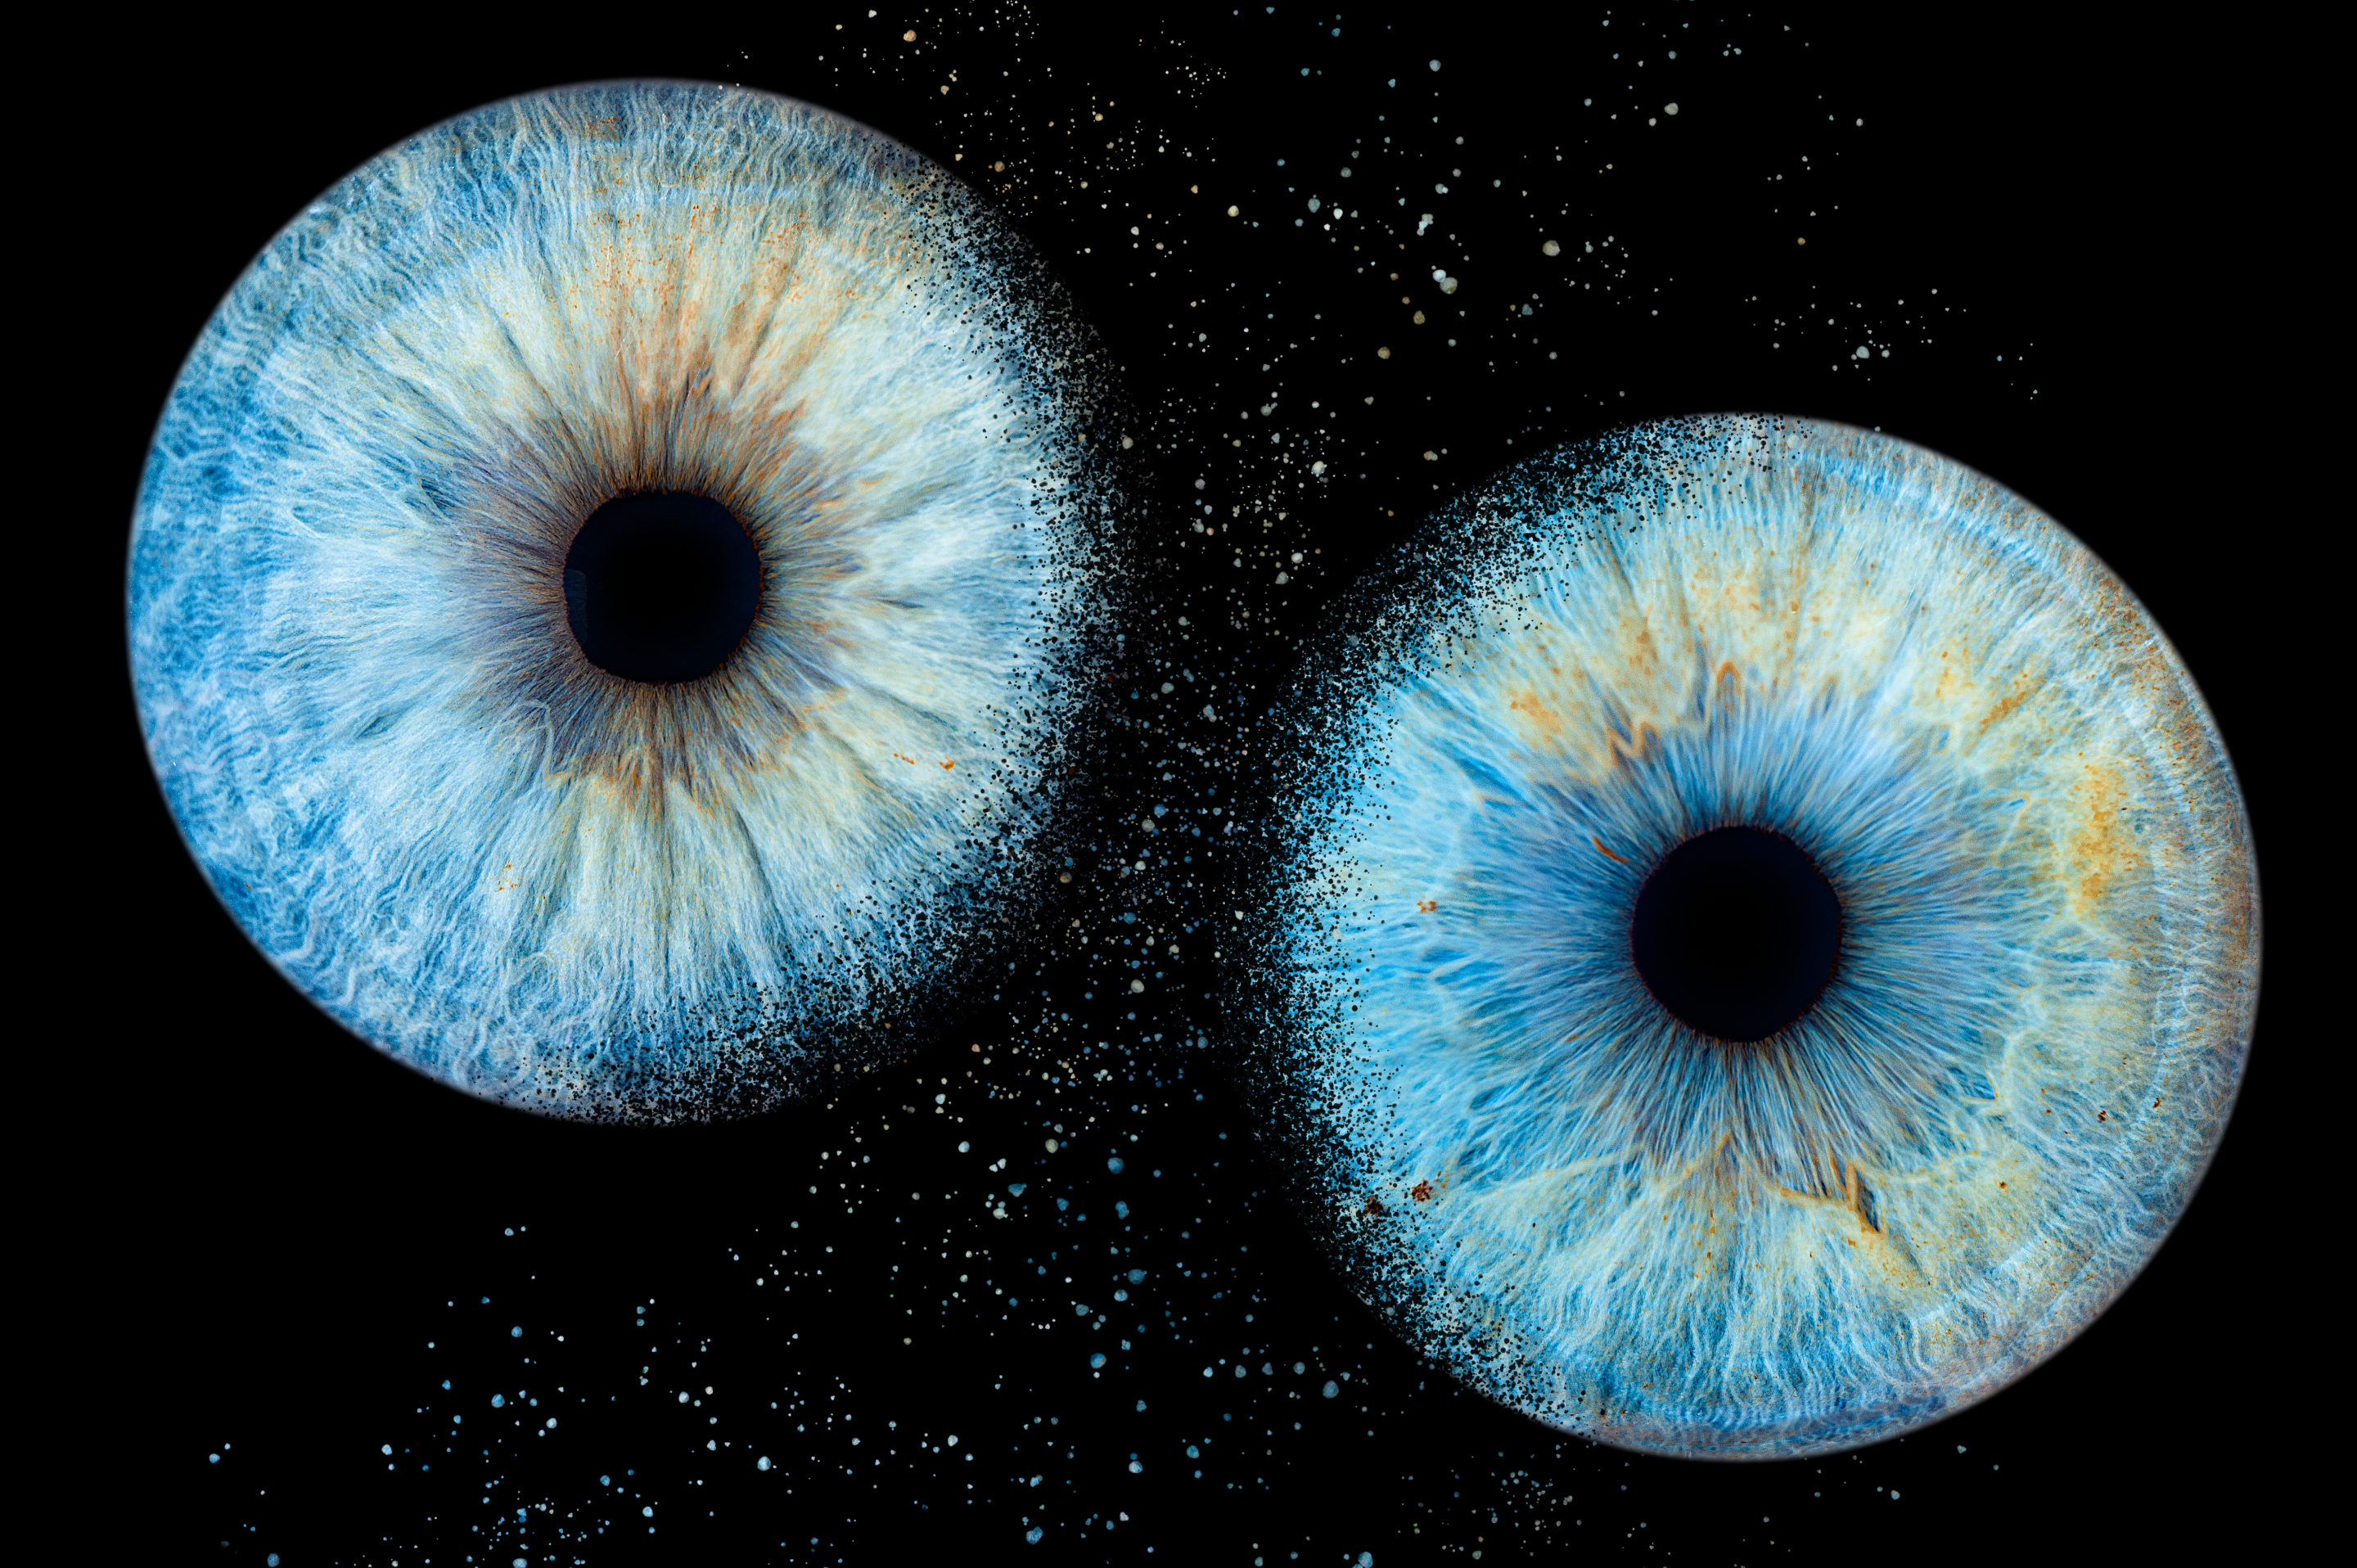 iris en macro pupille de couleur, yeux humains rapprocher chez romain Bebon photographe